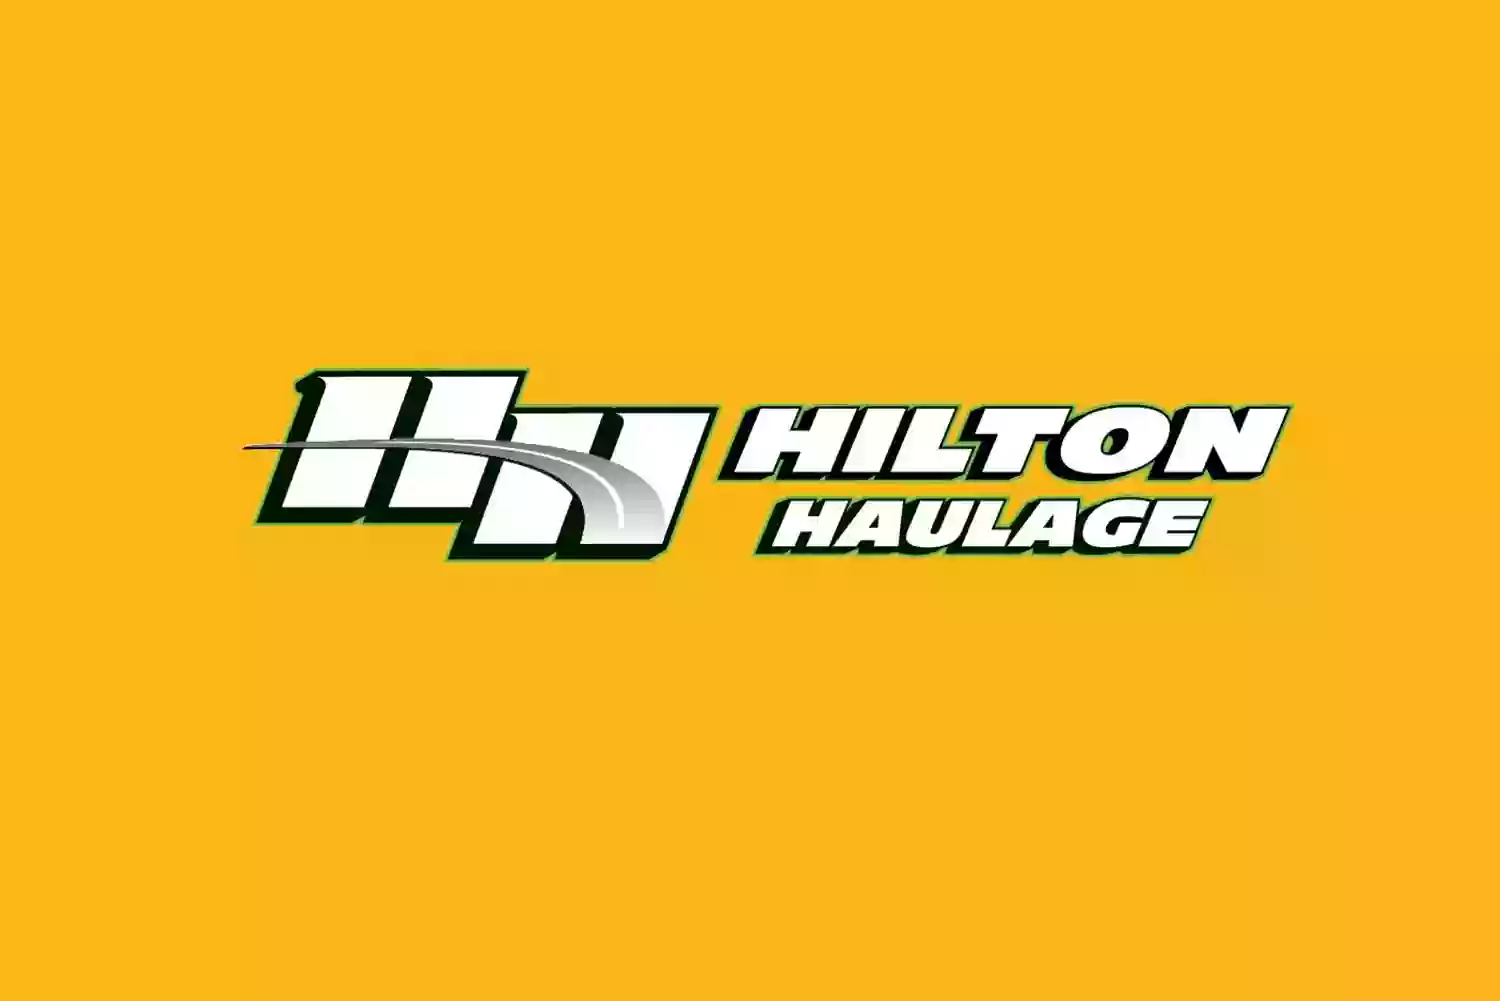 Hilton Haulage